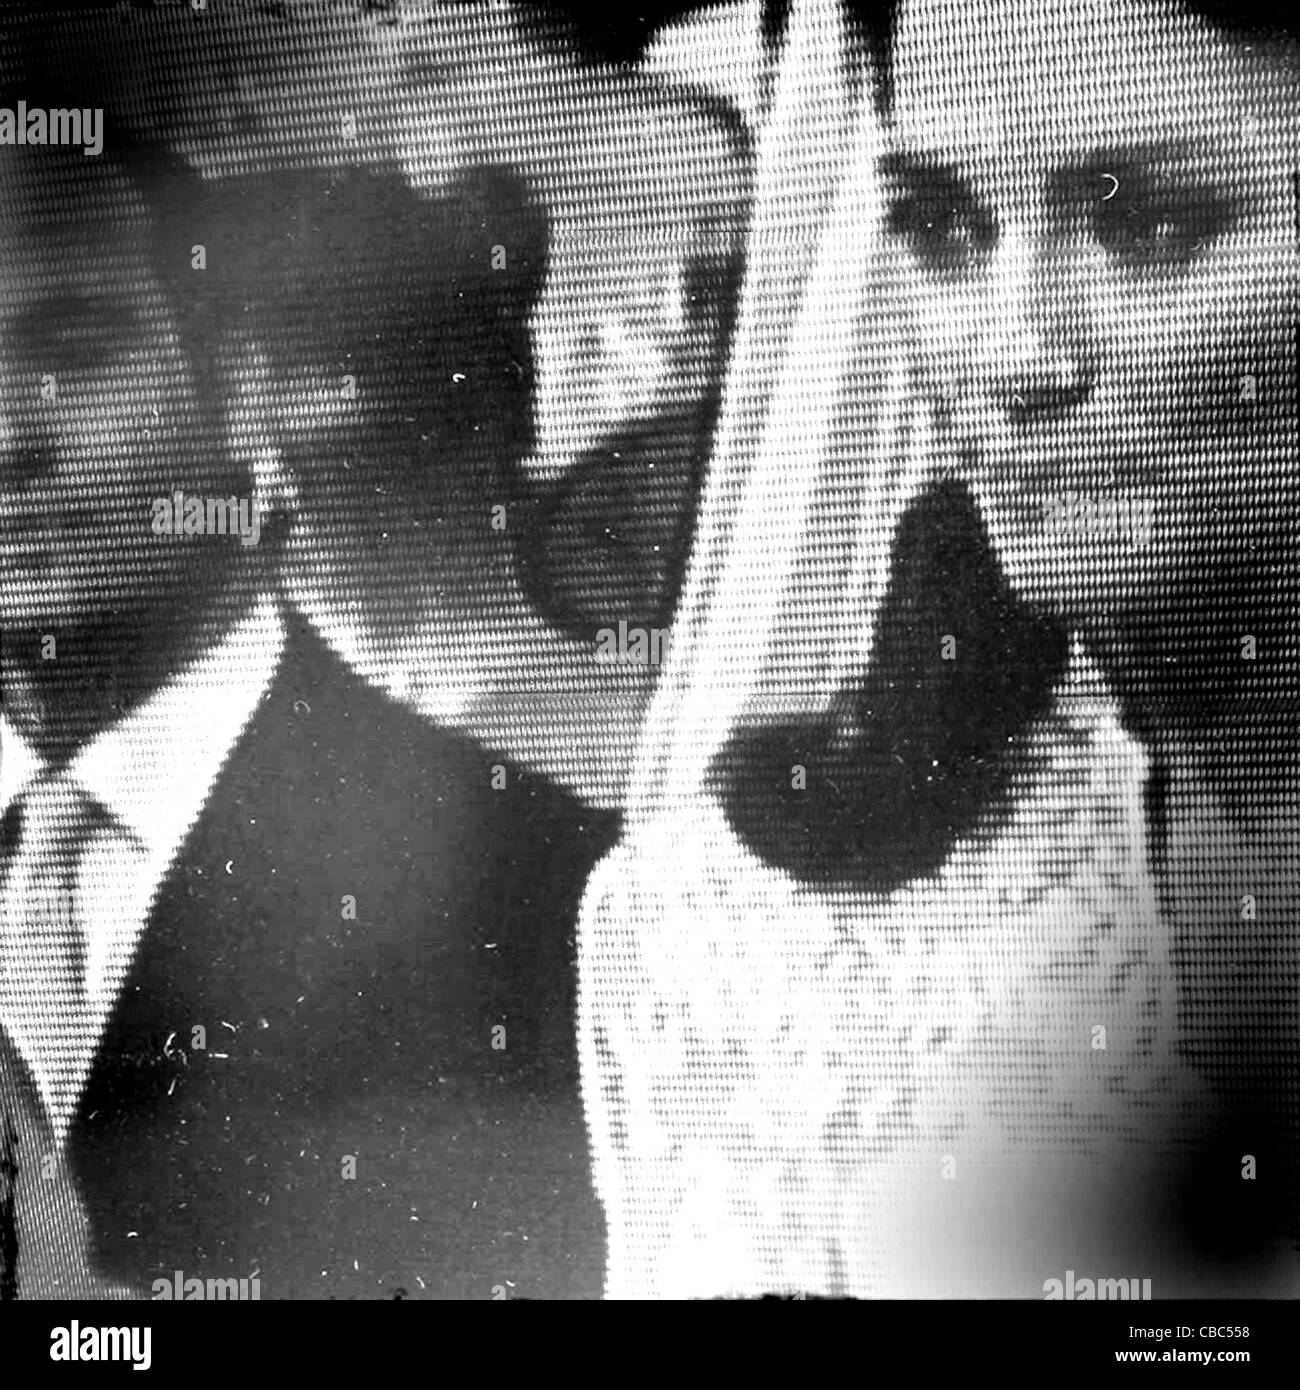 Königliche Hochzeit von Prinz William, Duke of Cambridge und Catherine, Herzogin von Cambridge. Foto: TVODpix Stockfoto